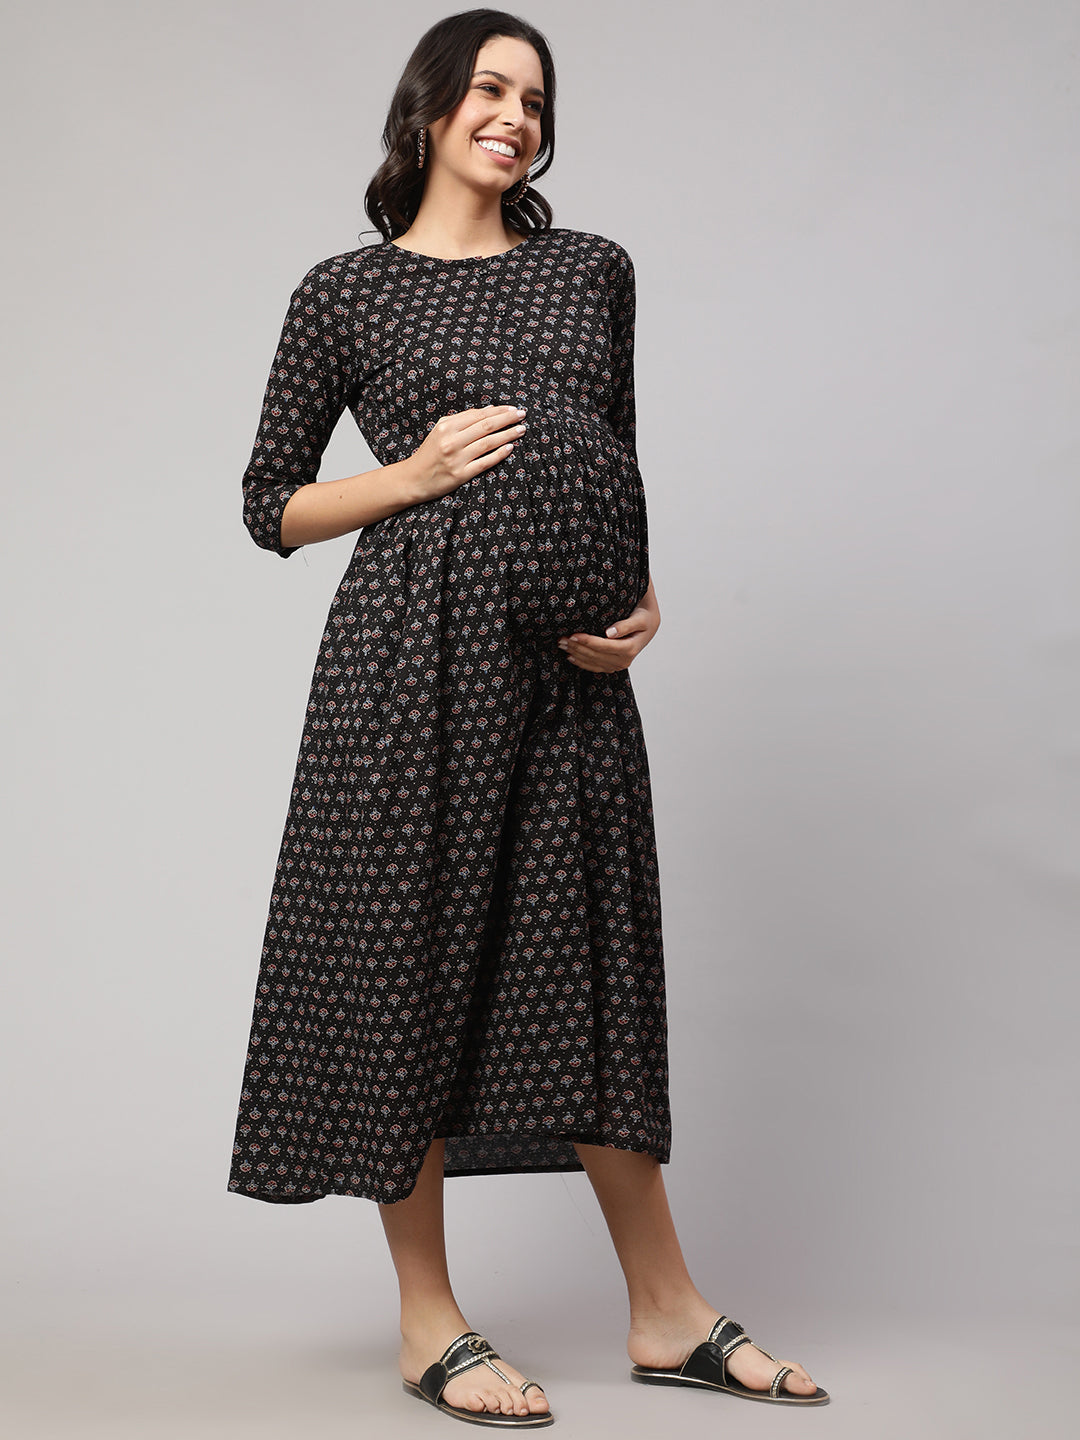 Women's Black Printed Flared Maternity Dress - Nayo Clothing